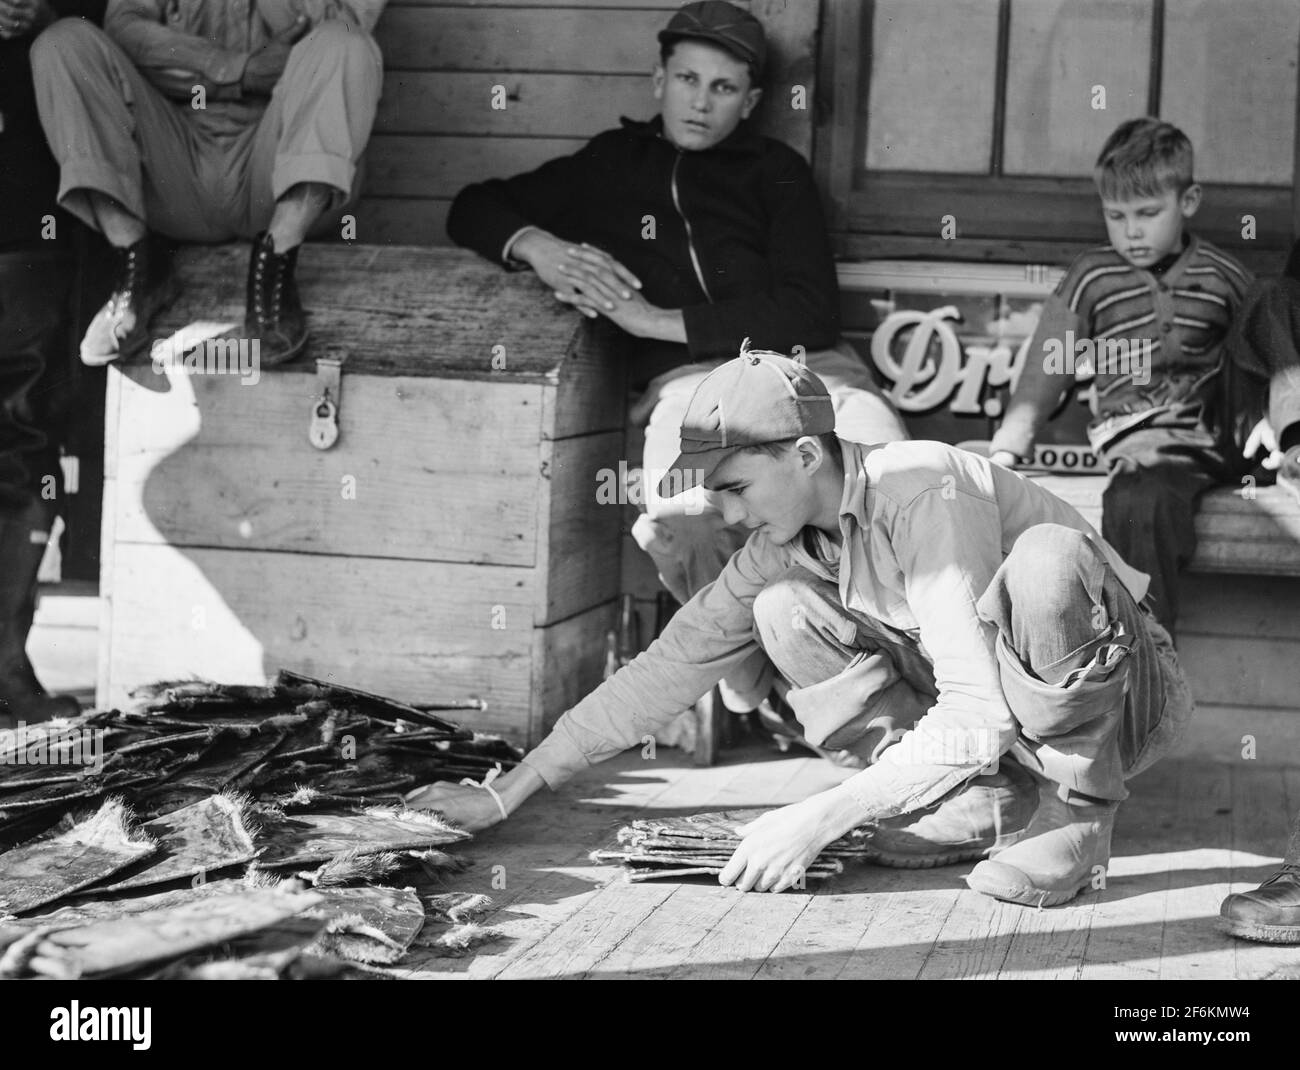 Grading Bisamratten, während Pelzkäufer und spanische Trapper während des Auktionsverkaufs auf der Veranda des Gemeinschaftsladens in Saint Bernard, Louisiana, schauen. 1941. Stockfoto